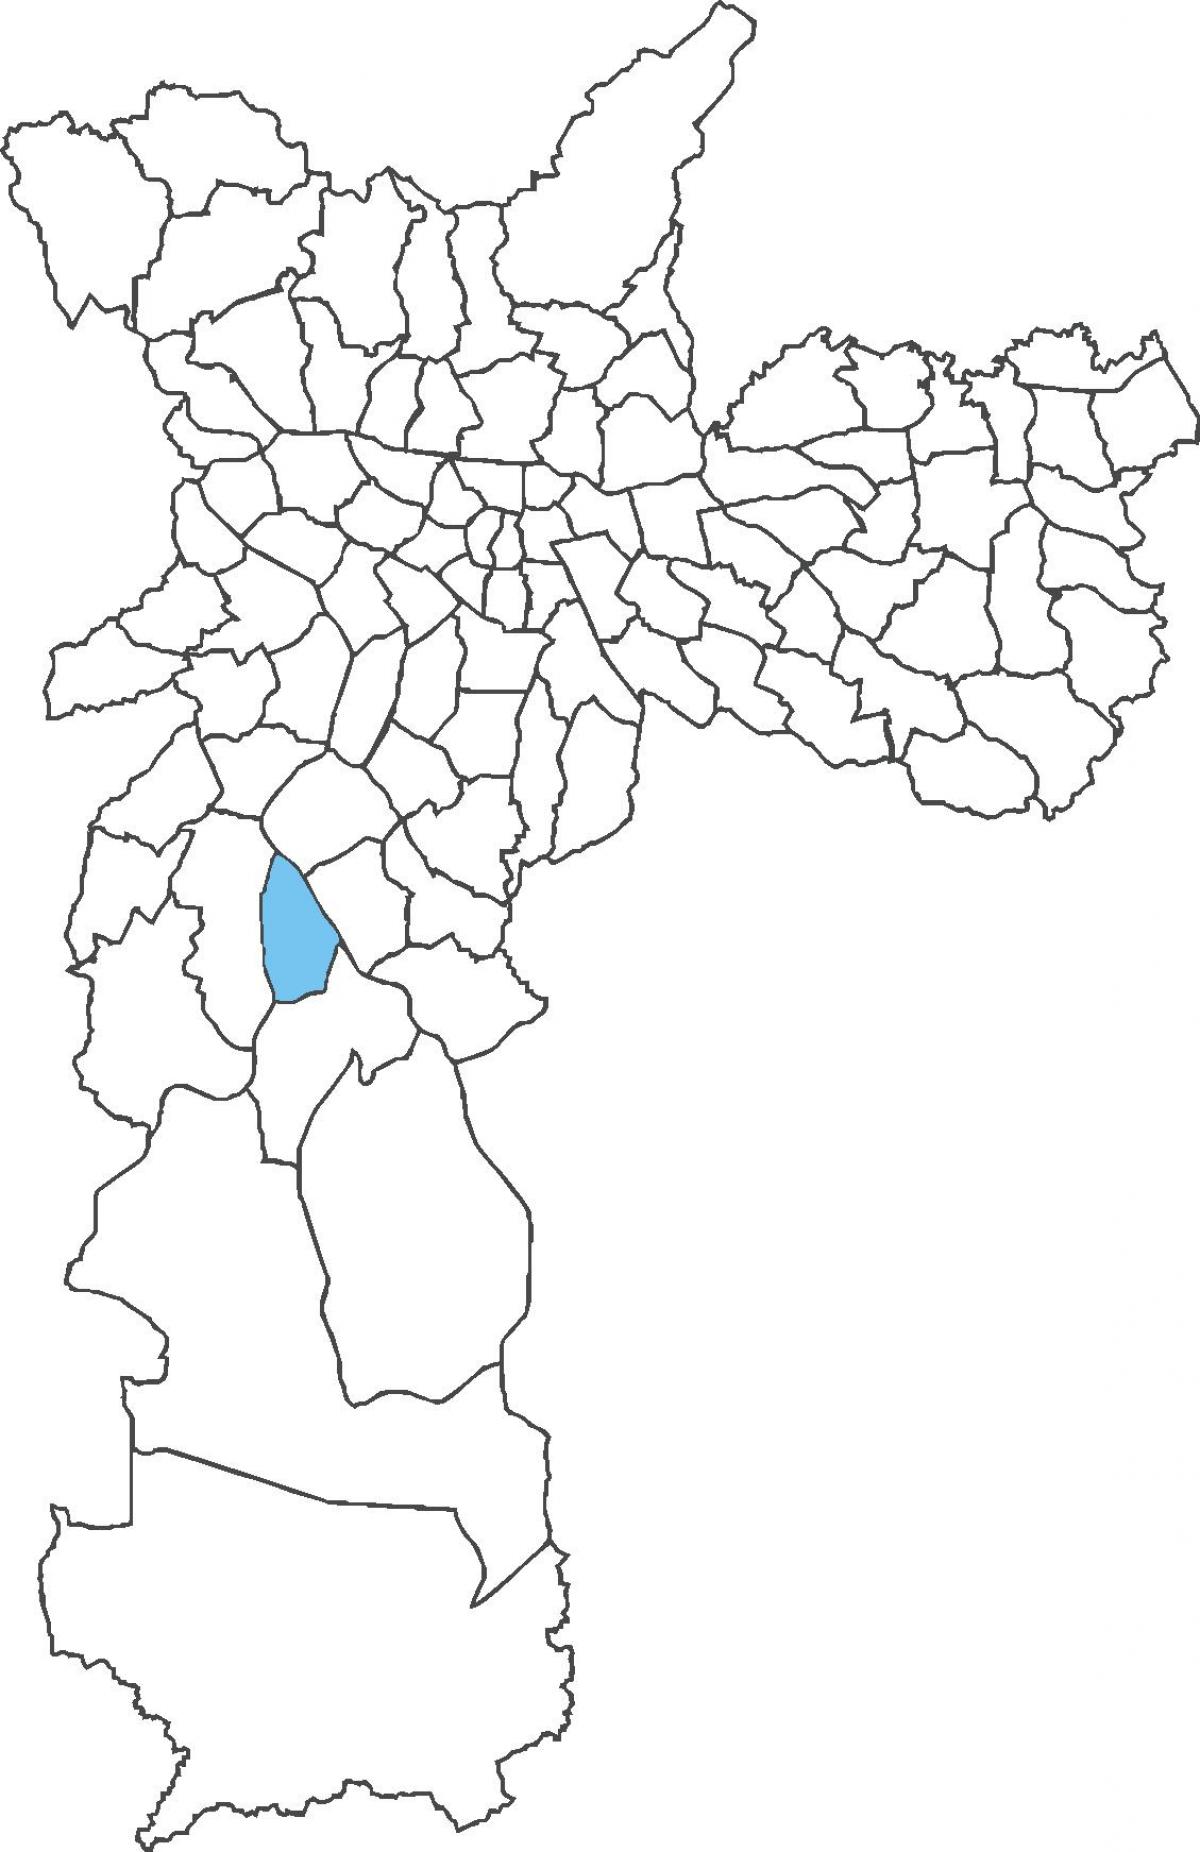 Kaart van Socorro distrik